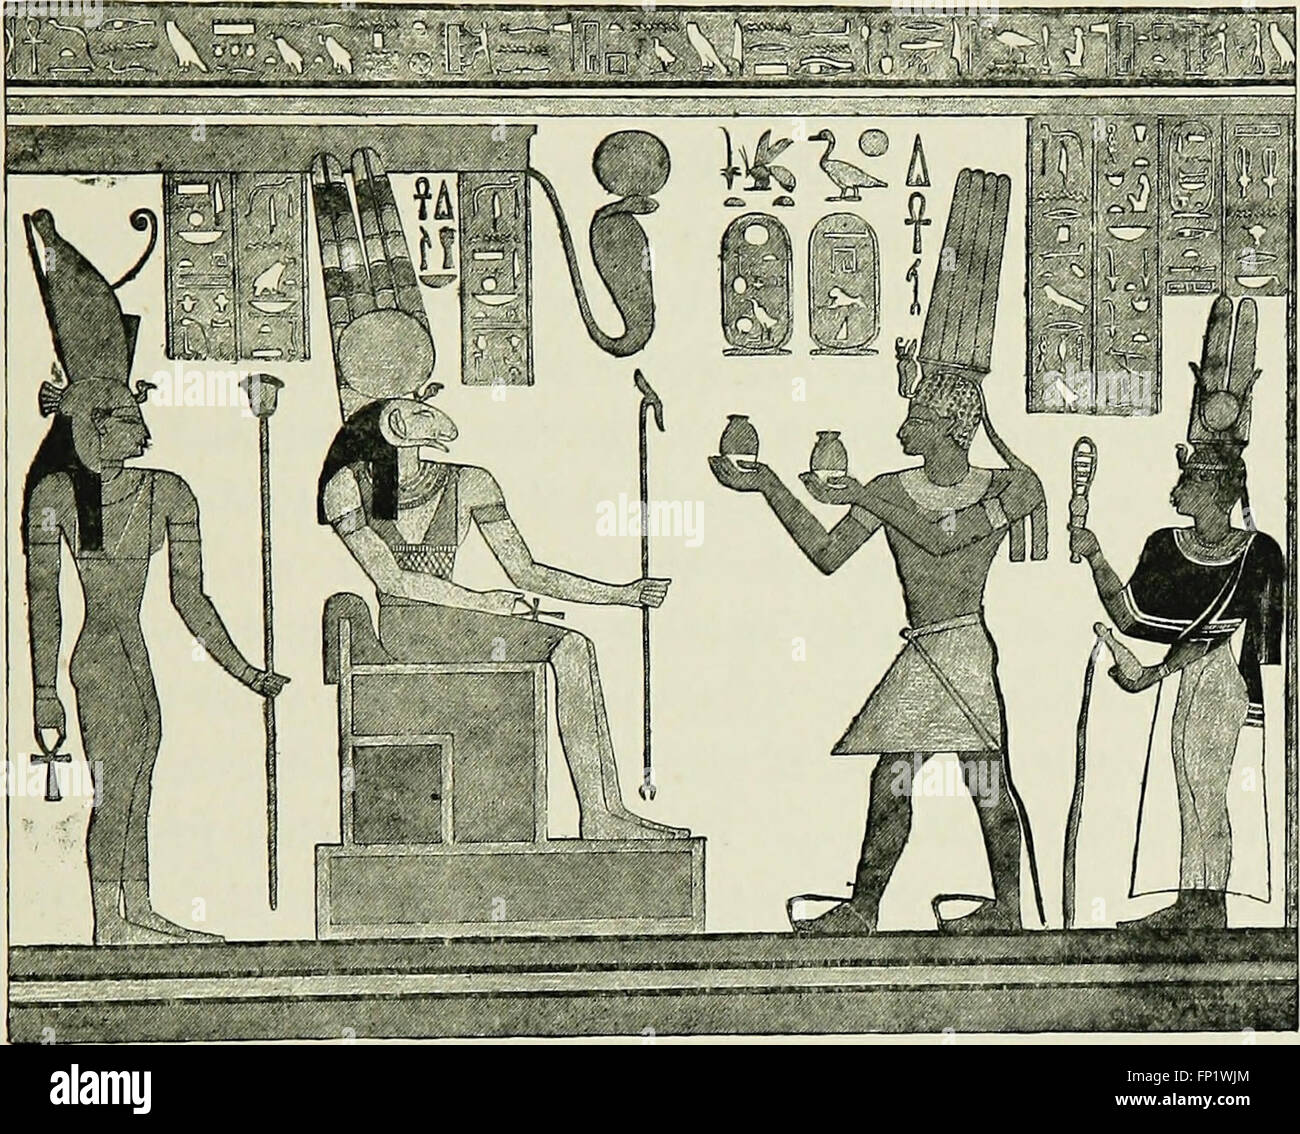 Богатство древней эпохи. Фараон Тахарка. Статуэтка фараона Тахарки. Фараон Тахарка 7 век. Бокхорис.